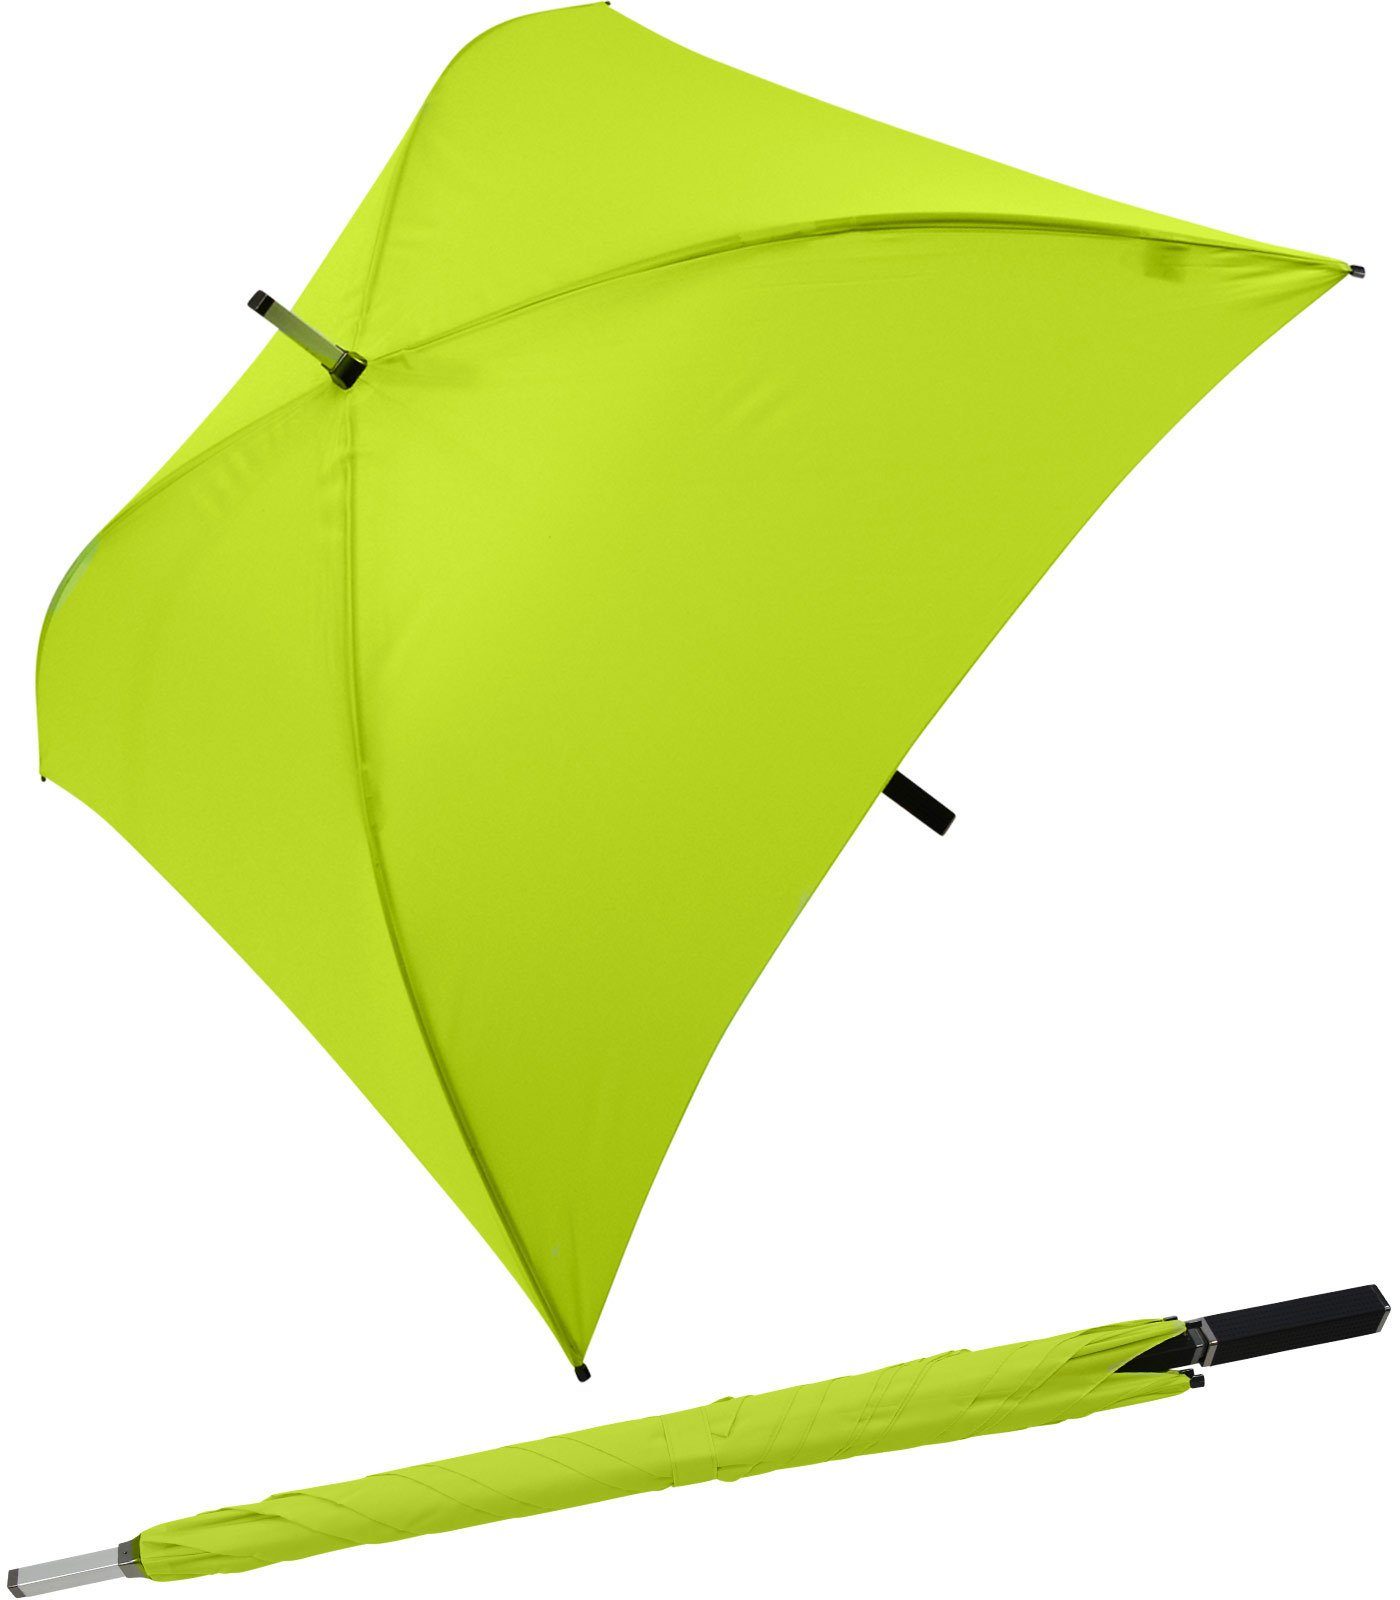 Impliva Langregenschirm All Square® voll quadratischer Regenschirm, der ganz besondere Regenschirm hellgrün